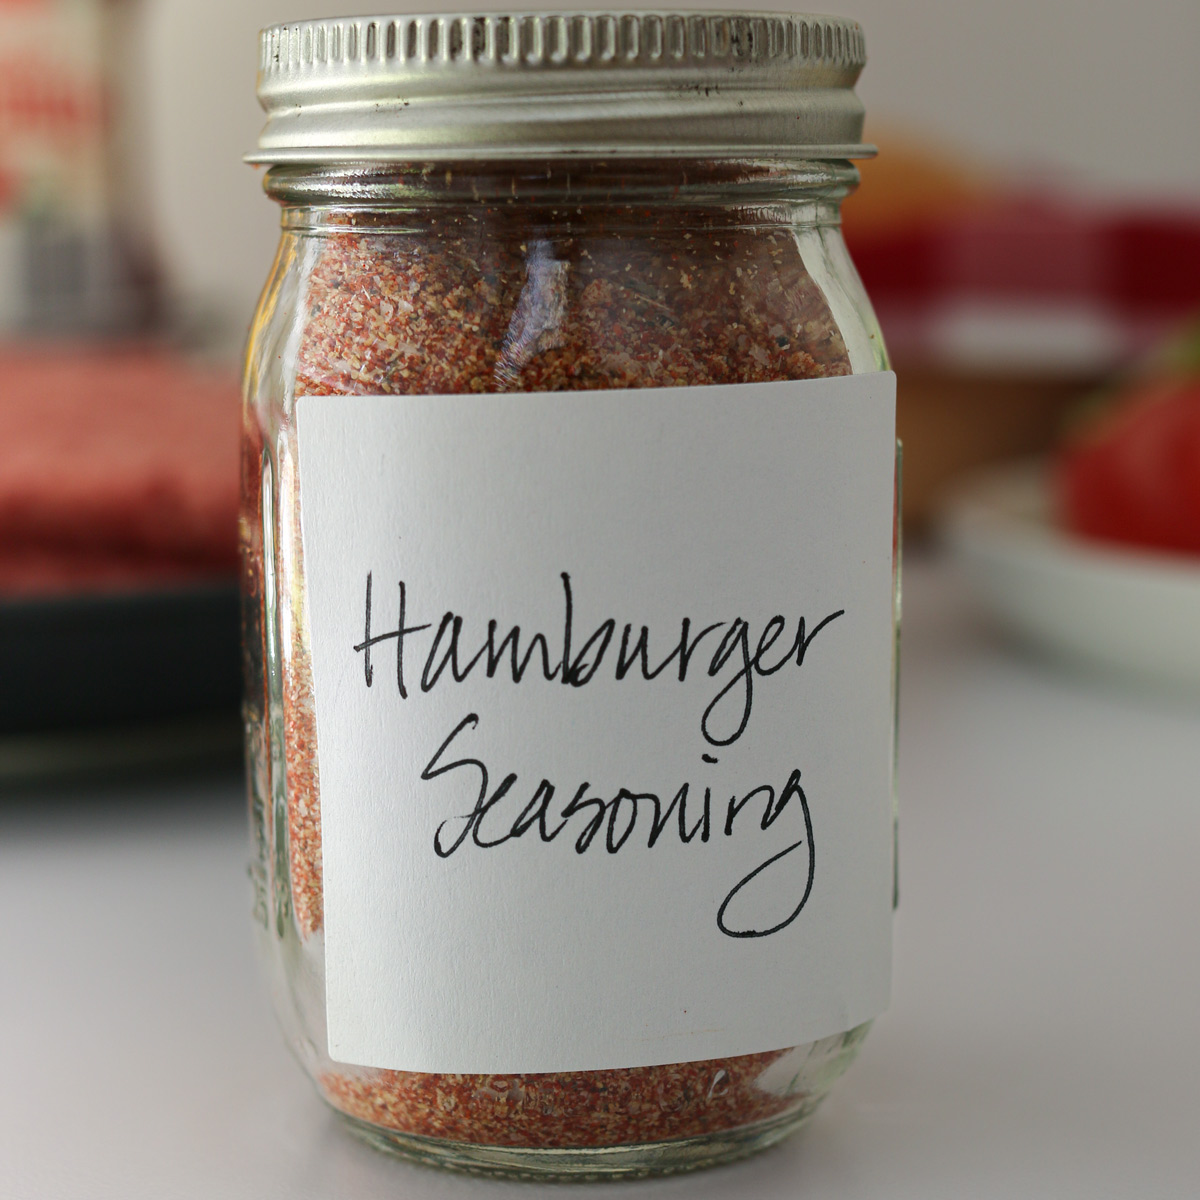 Hamburger Seasoning Recipe - Seasoning Mix - Good Cheap Eats